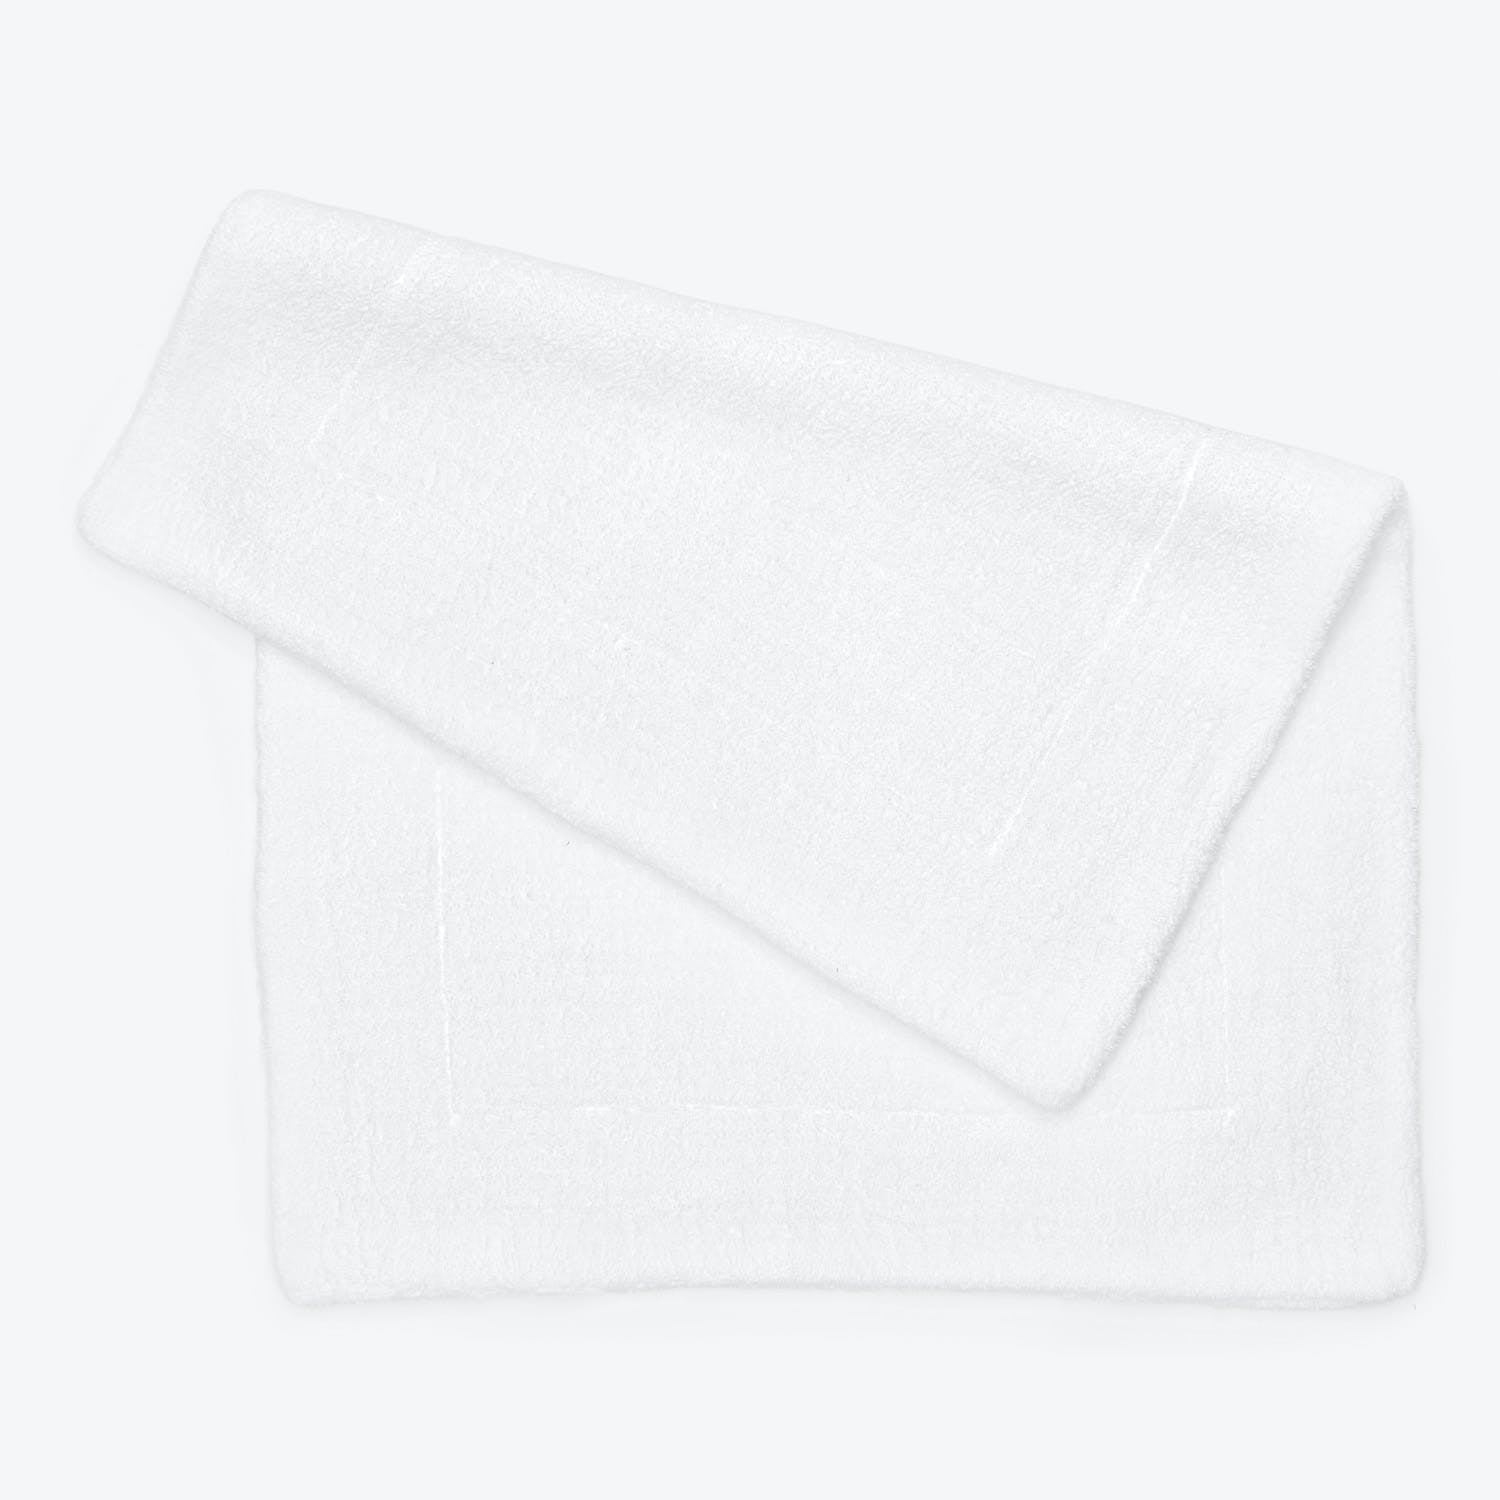 Neatly folded, plush white towel against a minimalist background.